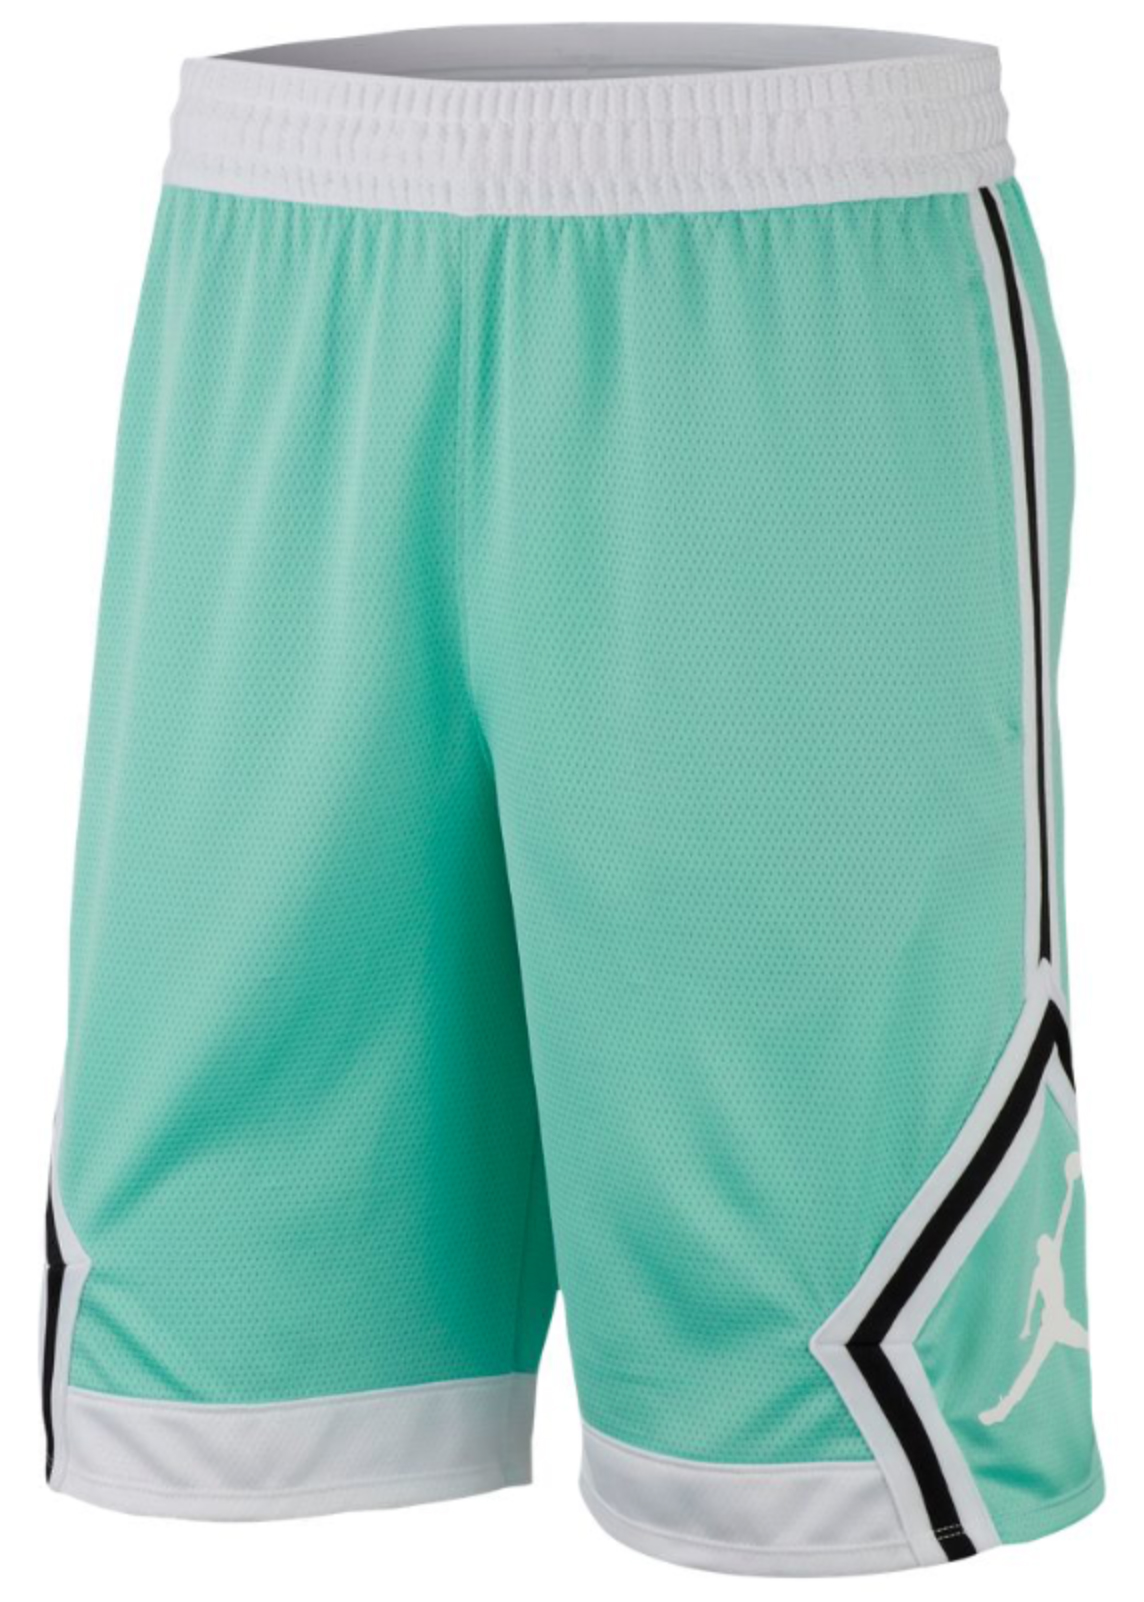 jordan-11-emerald-easter-shorts-match-1